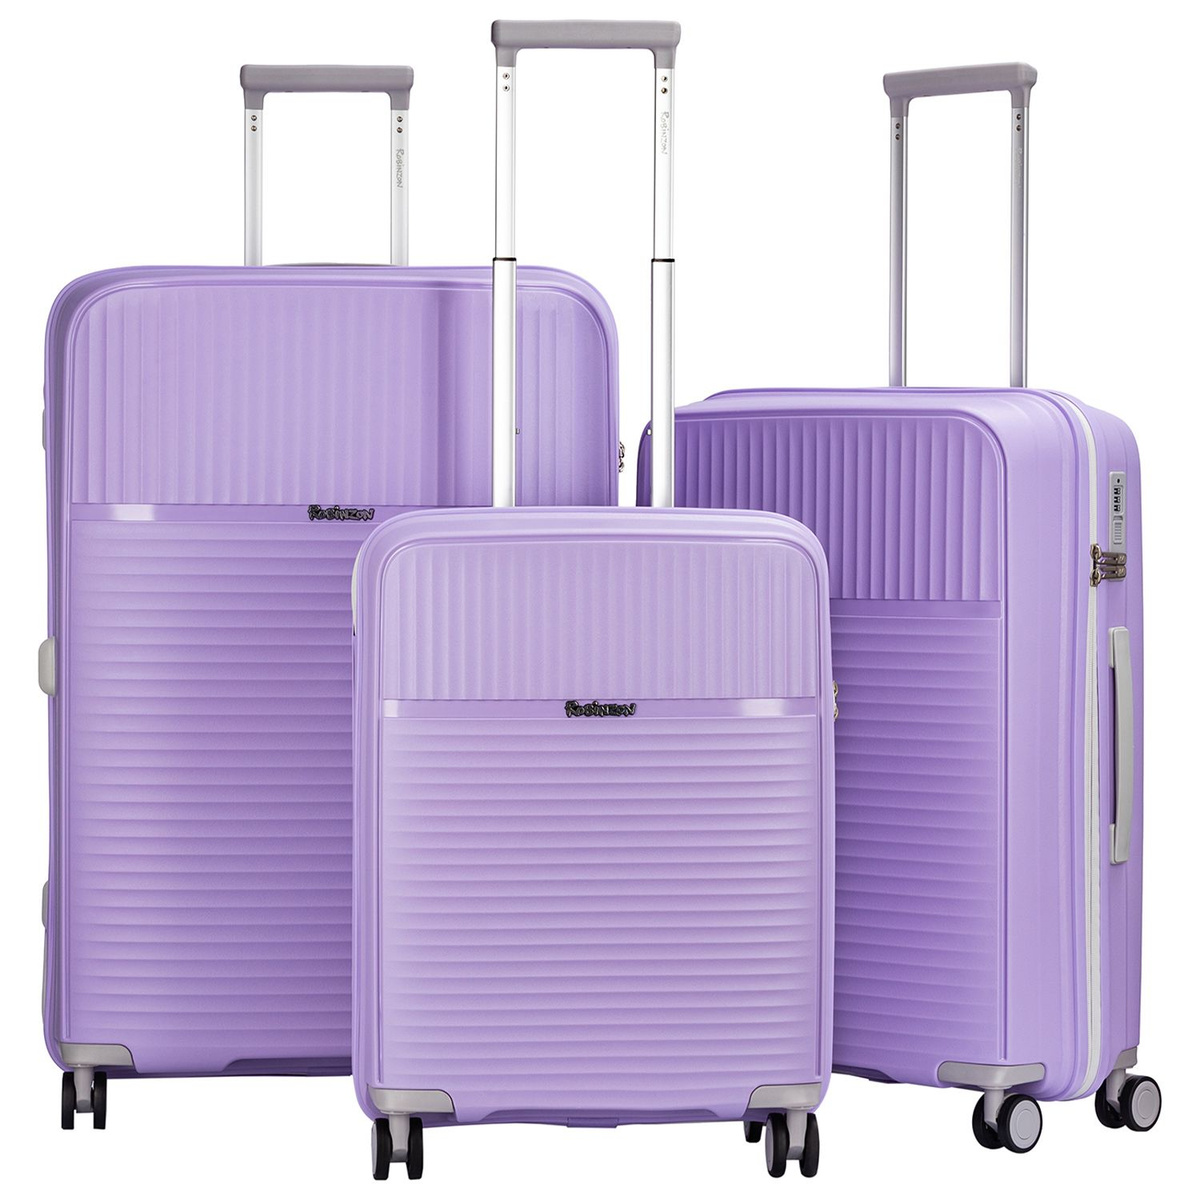 Небольшой размер чемодана S (до 55 см) идеально подходит для командировок и коротких поездок, а также позволяет взять чемодан в салон самолёта в качестве ручной клади.